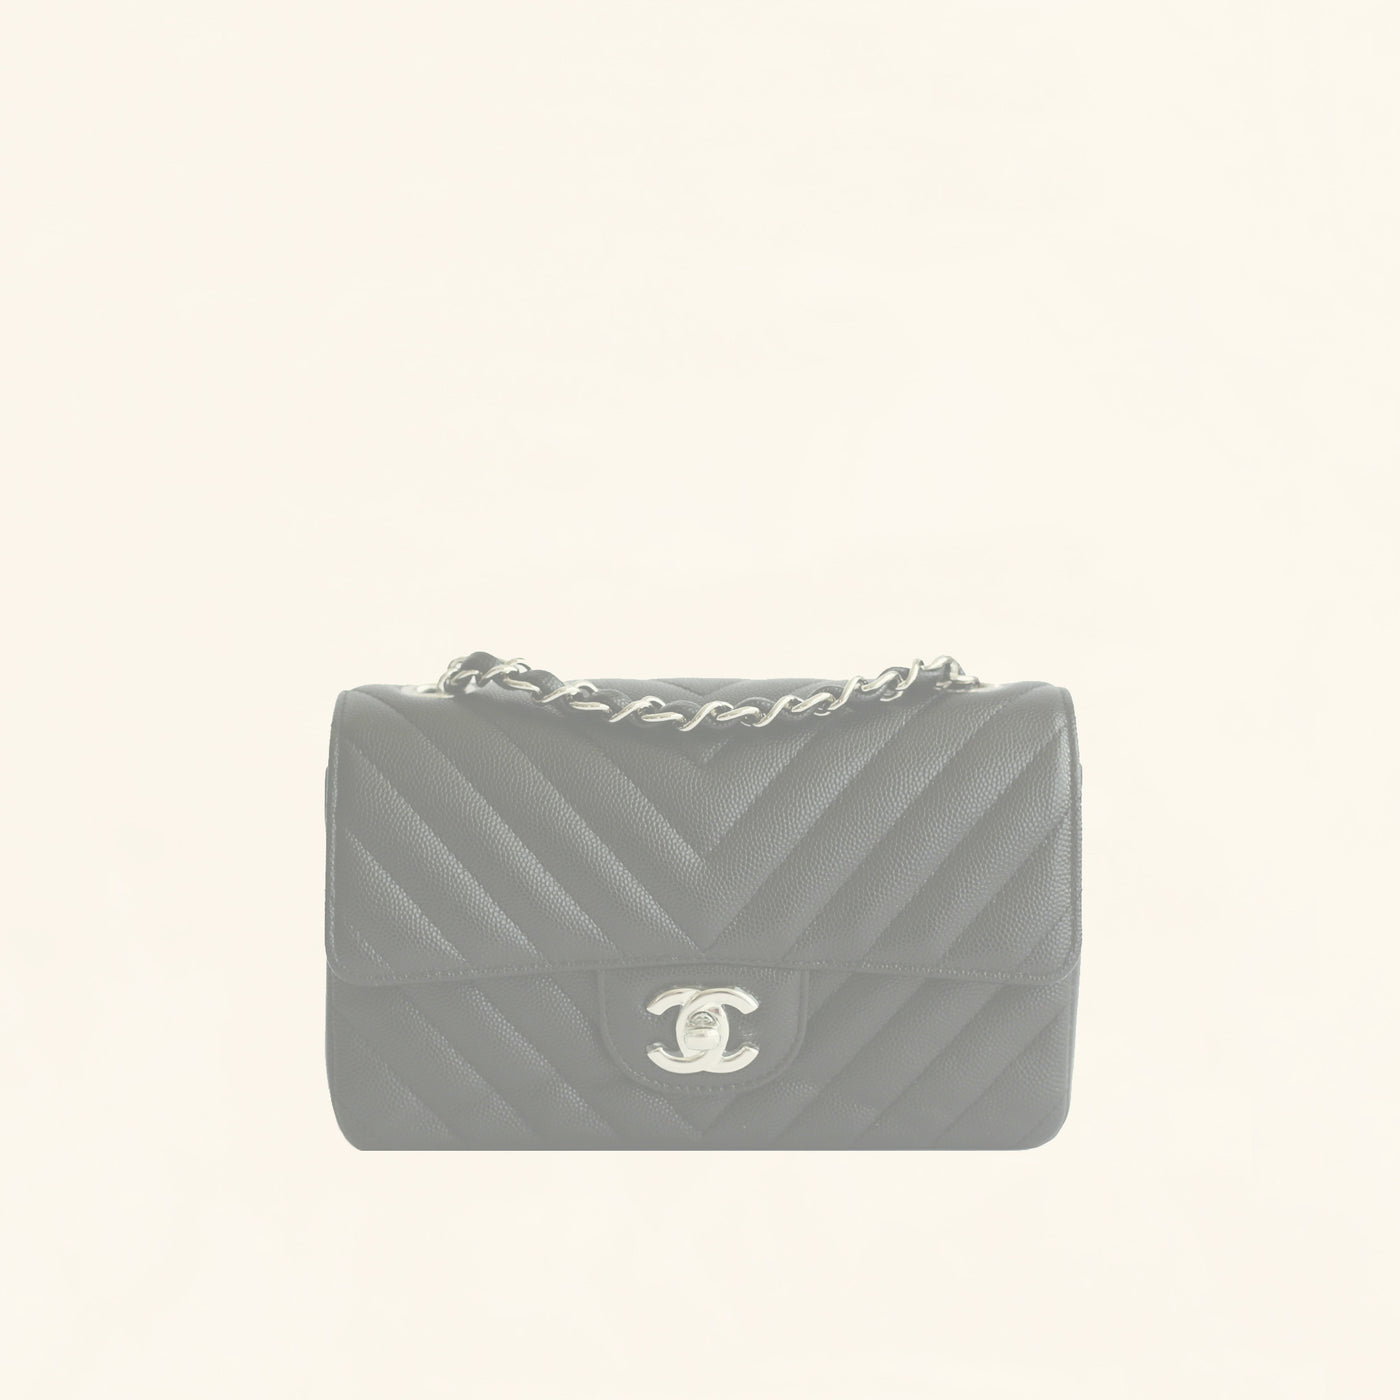 M46168 Louis Vuitton Monogram Empreinte OnTheGo PM Tote